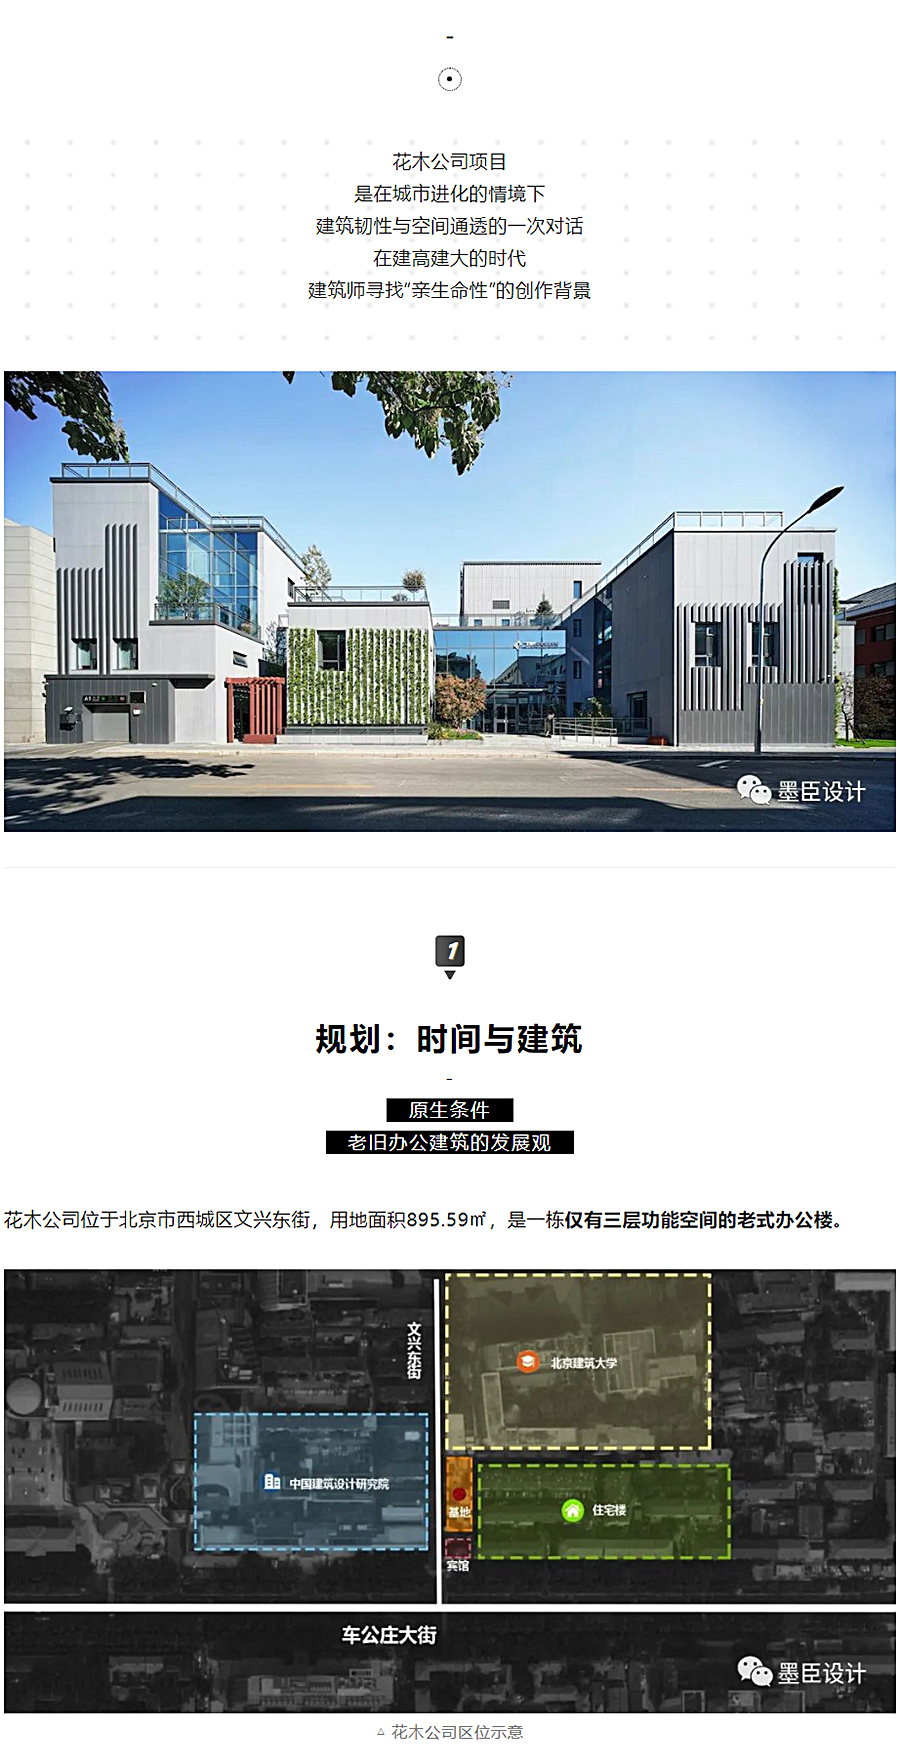 生态办公的游园序列-_-北京花木公司办公楼改造_0001_图层-2.jpg